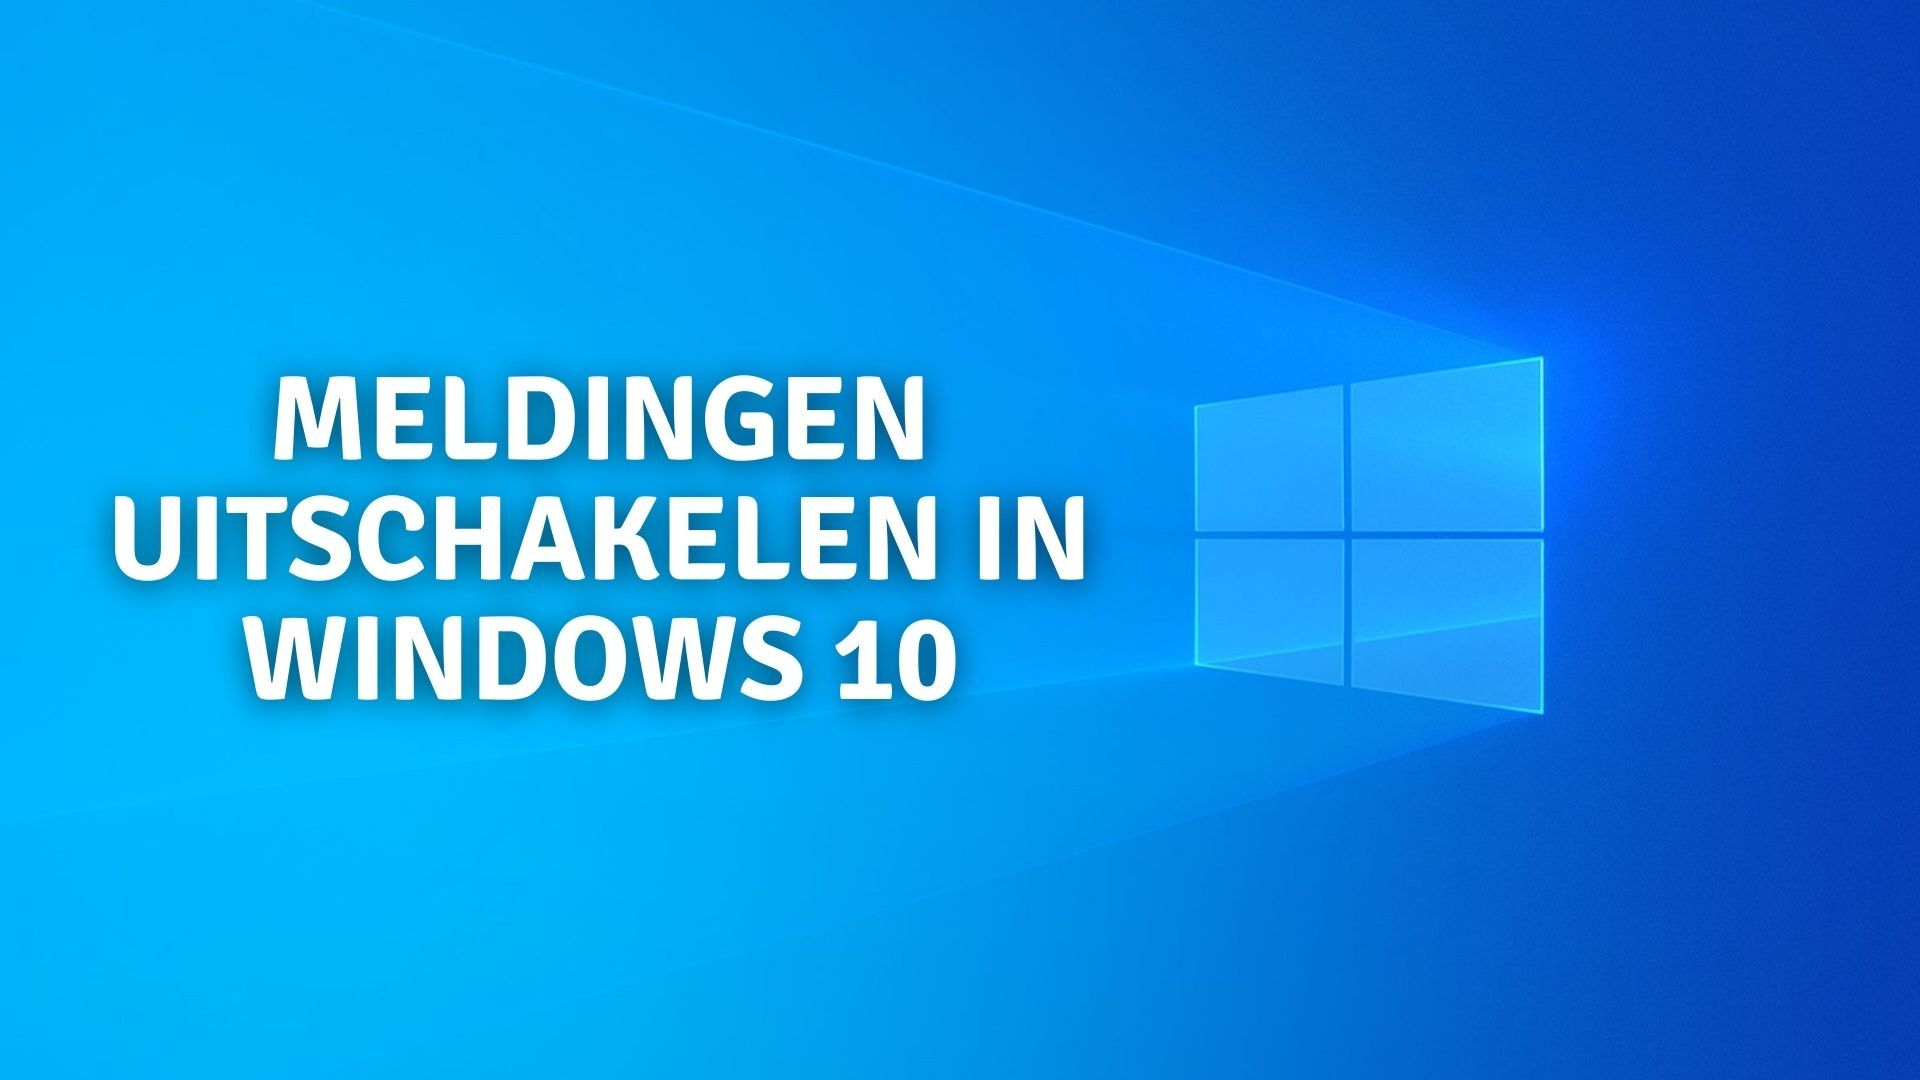 Meldingen uitschakelen in Windows 10